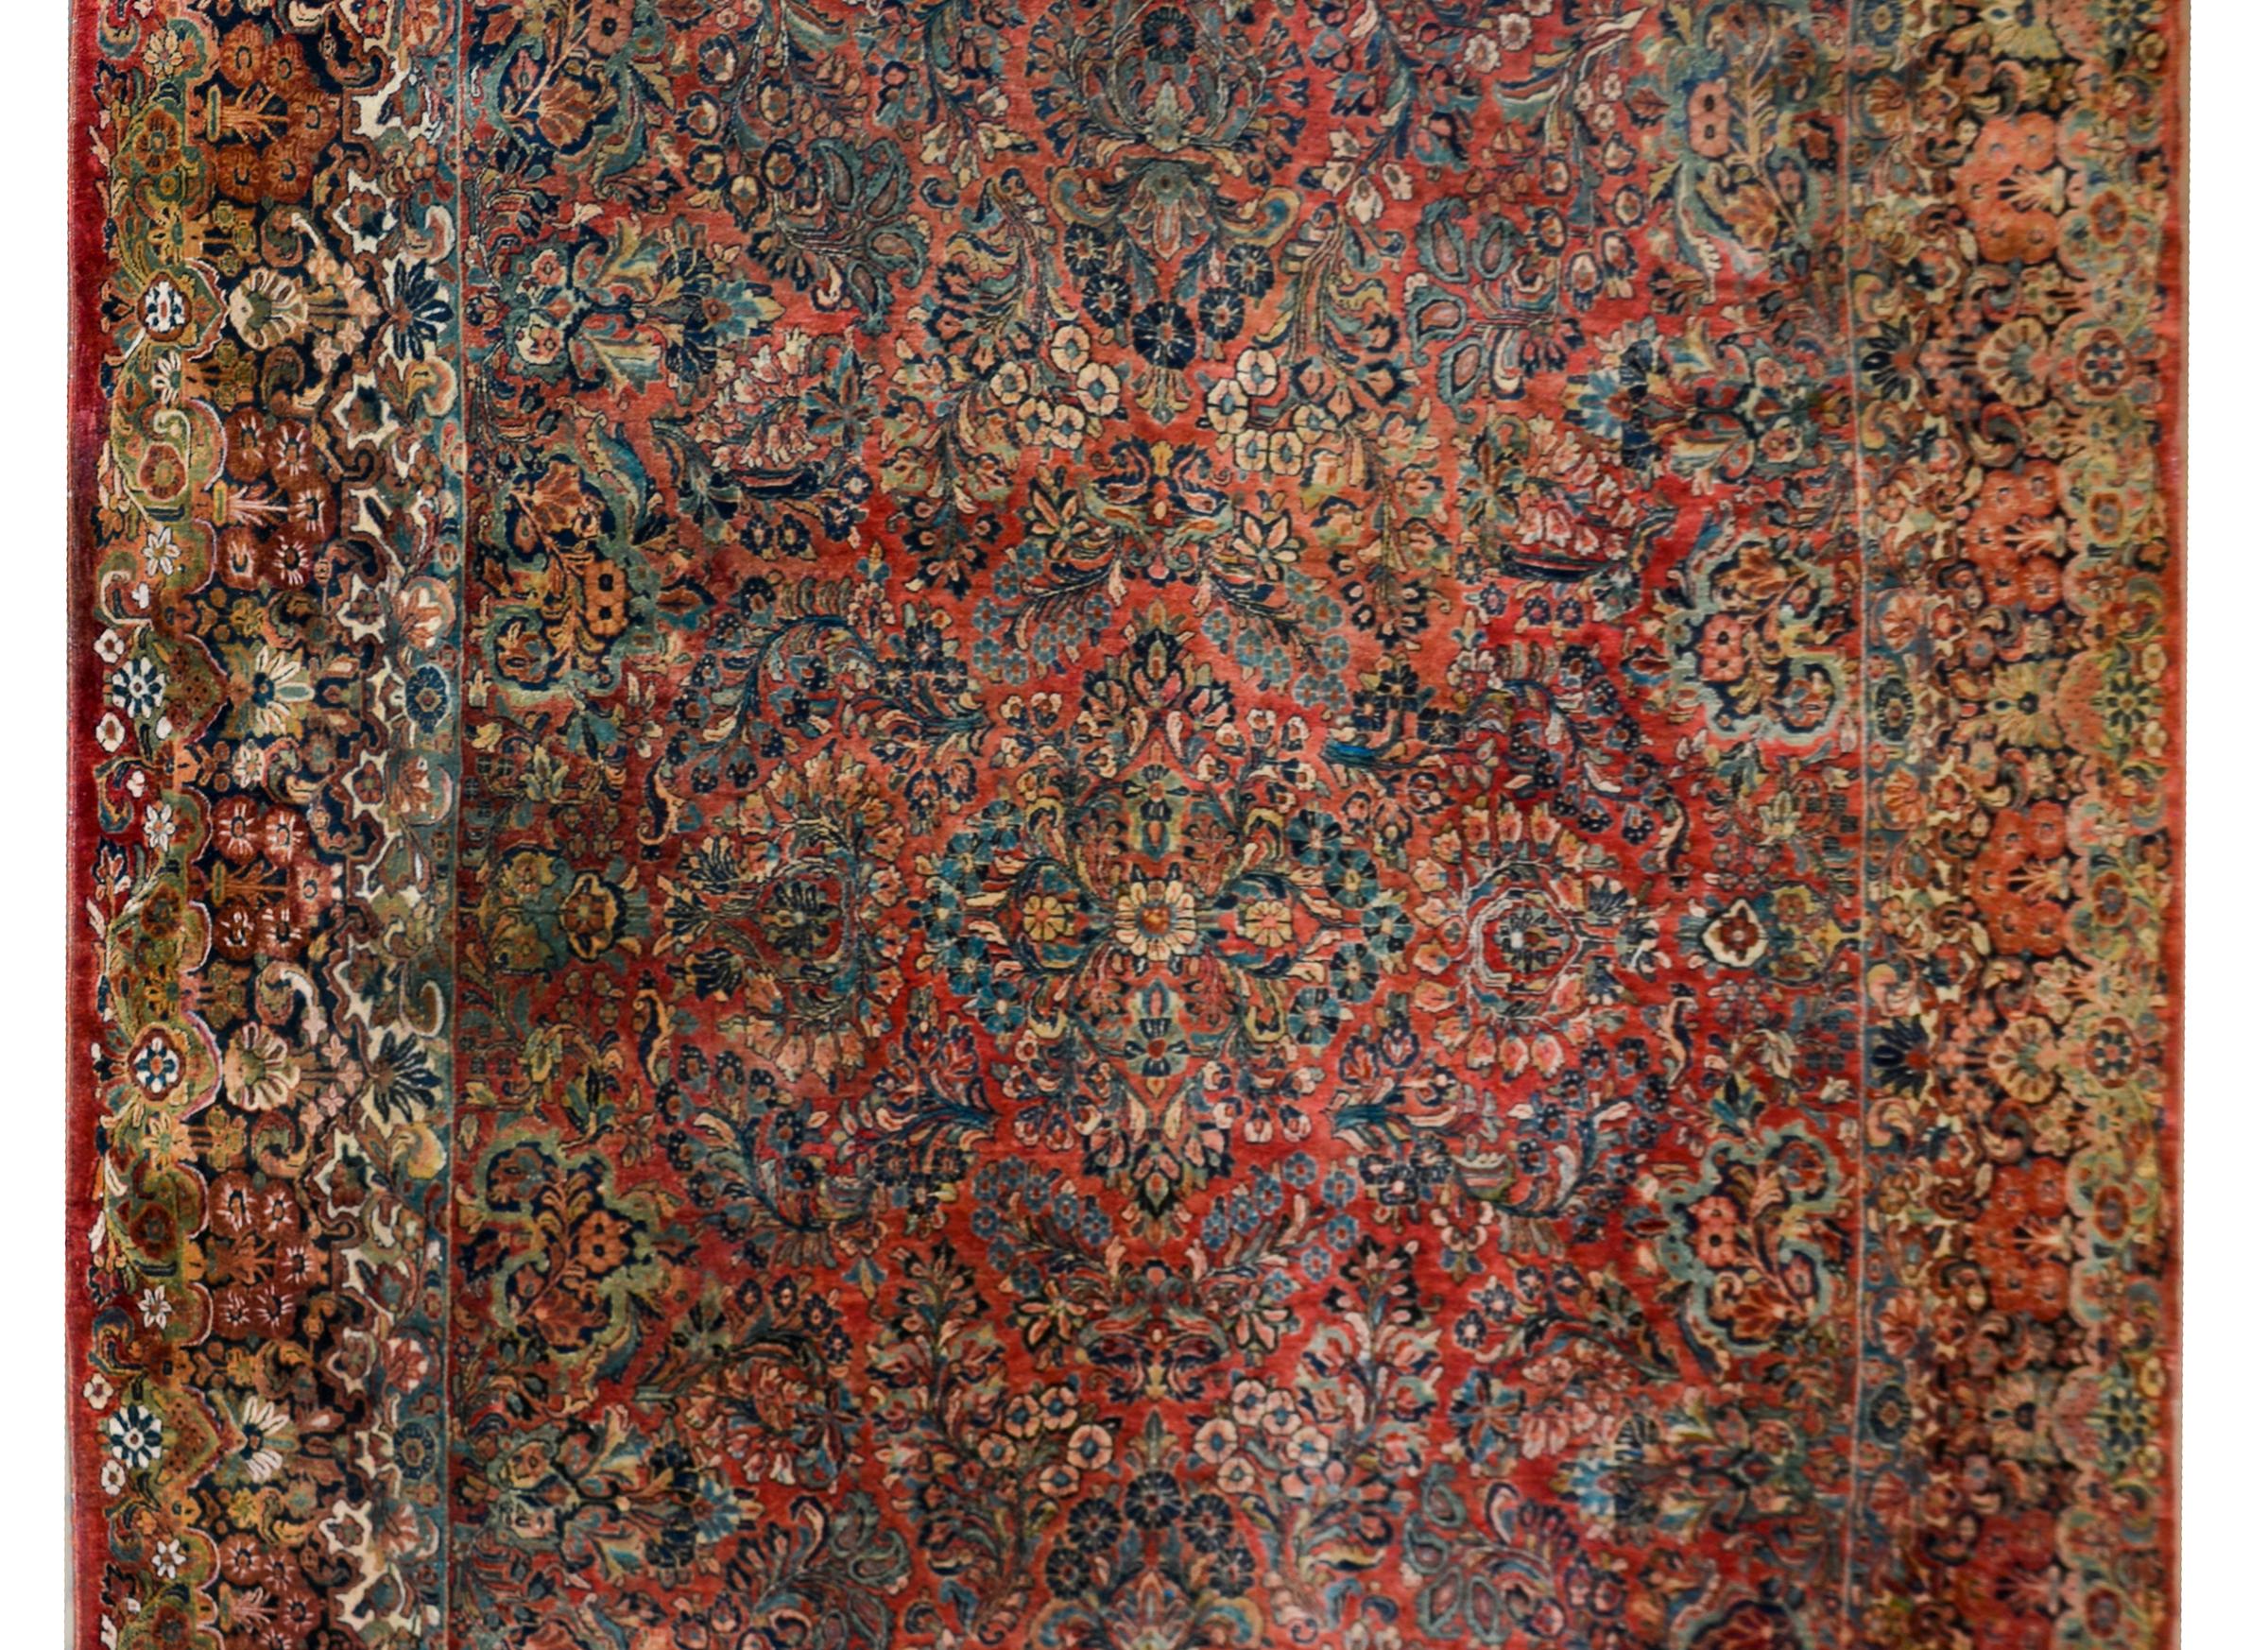 Un incroyable tapis sarouk persan du début du 20e siècle avec un incroyable motif floral en grappes tissé dans des couleurs riches et foncées, notamment des rouges, des crèmes, des roses et des indigos clairs et foncés, le tout sur un fond